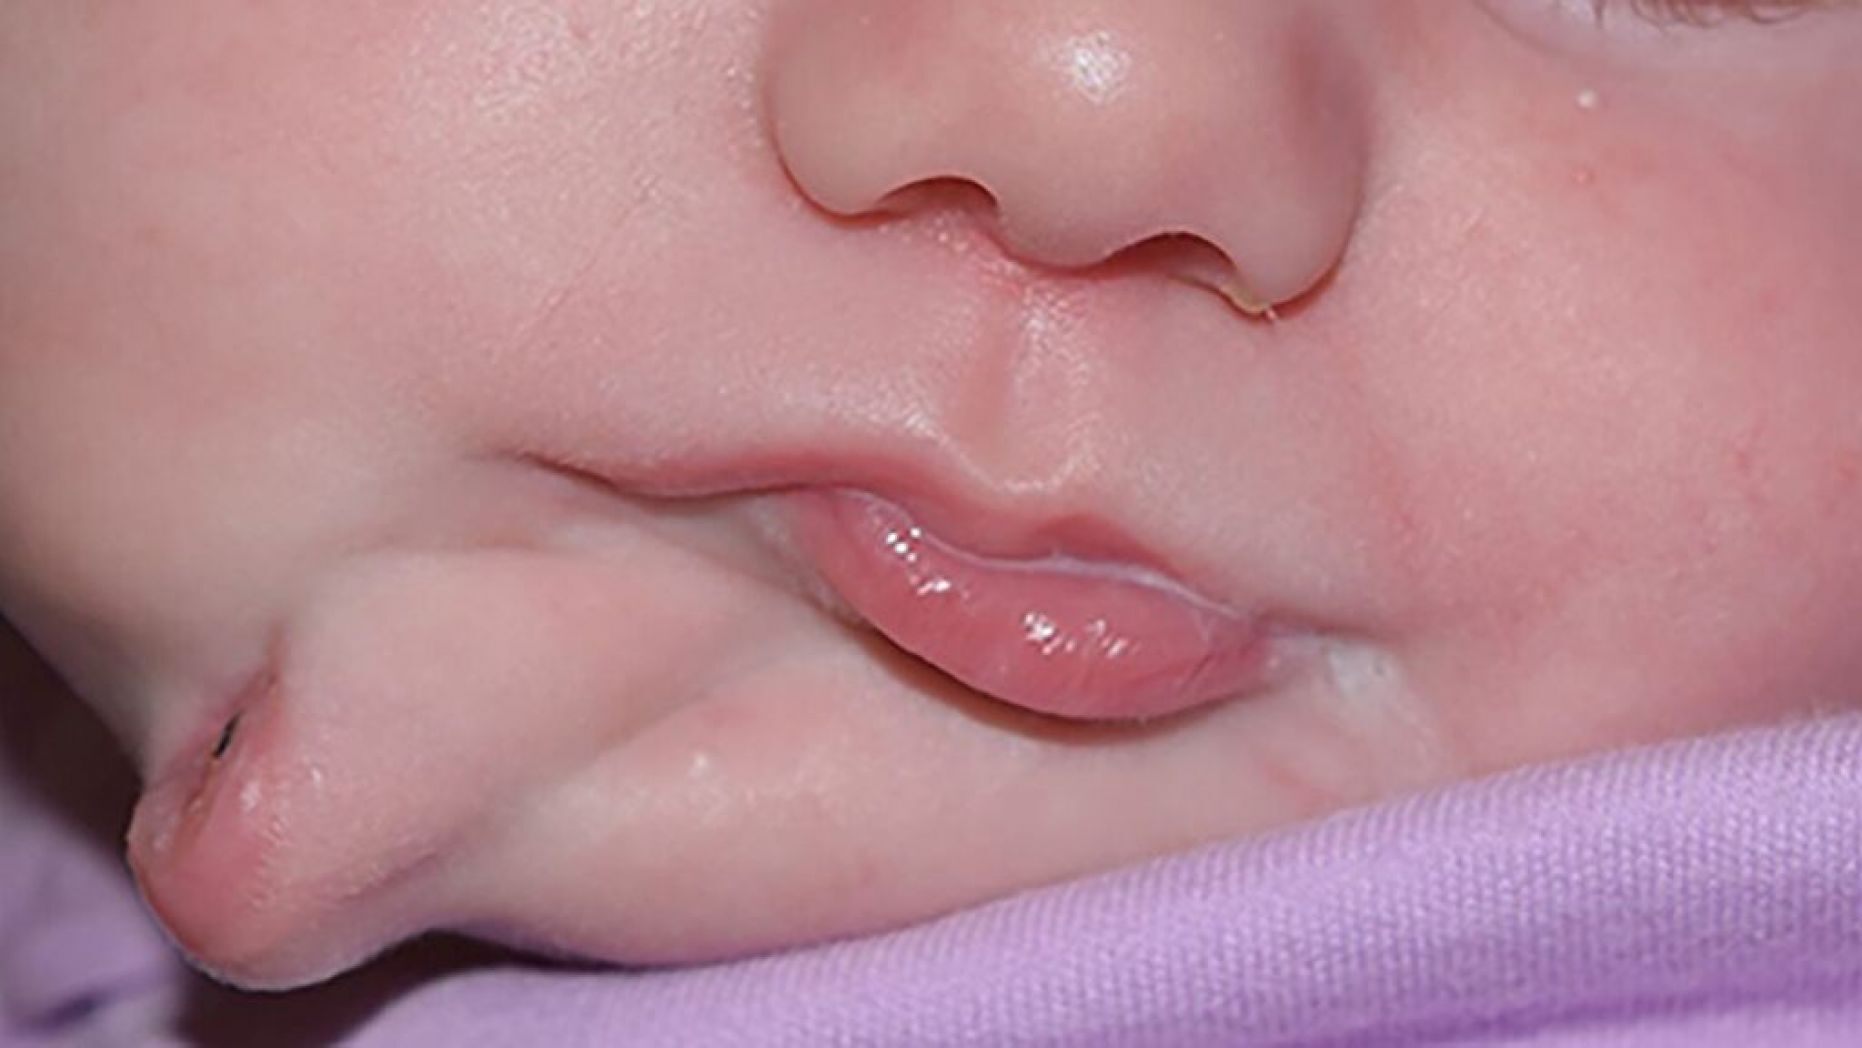   Bé gái sinh ra đã có 2 cái miệng  